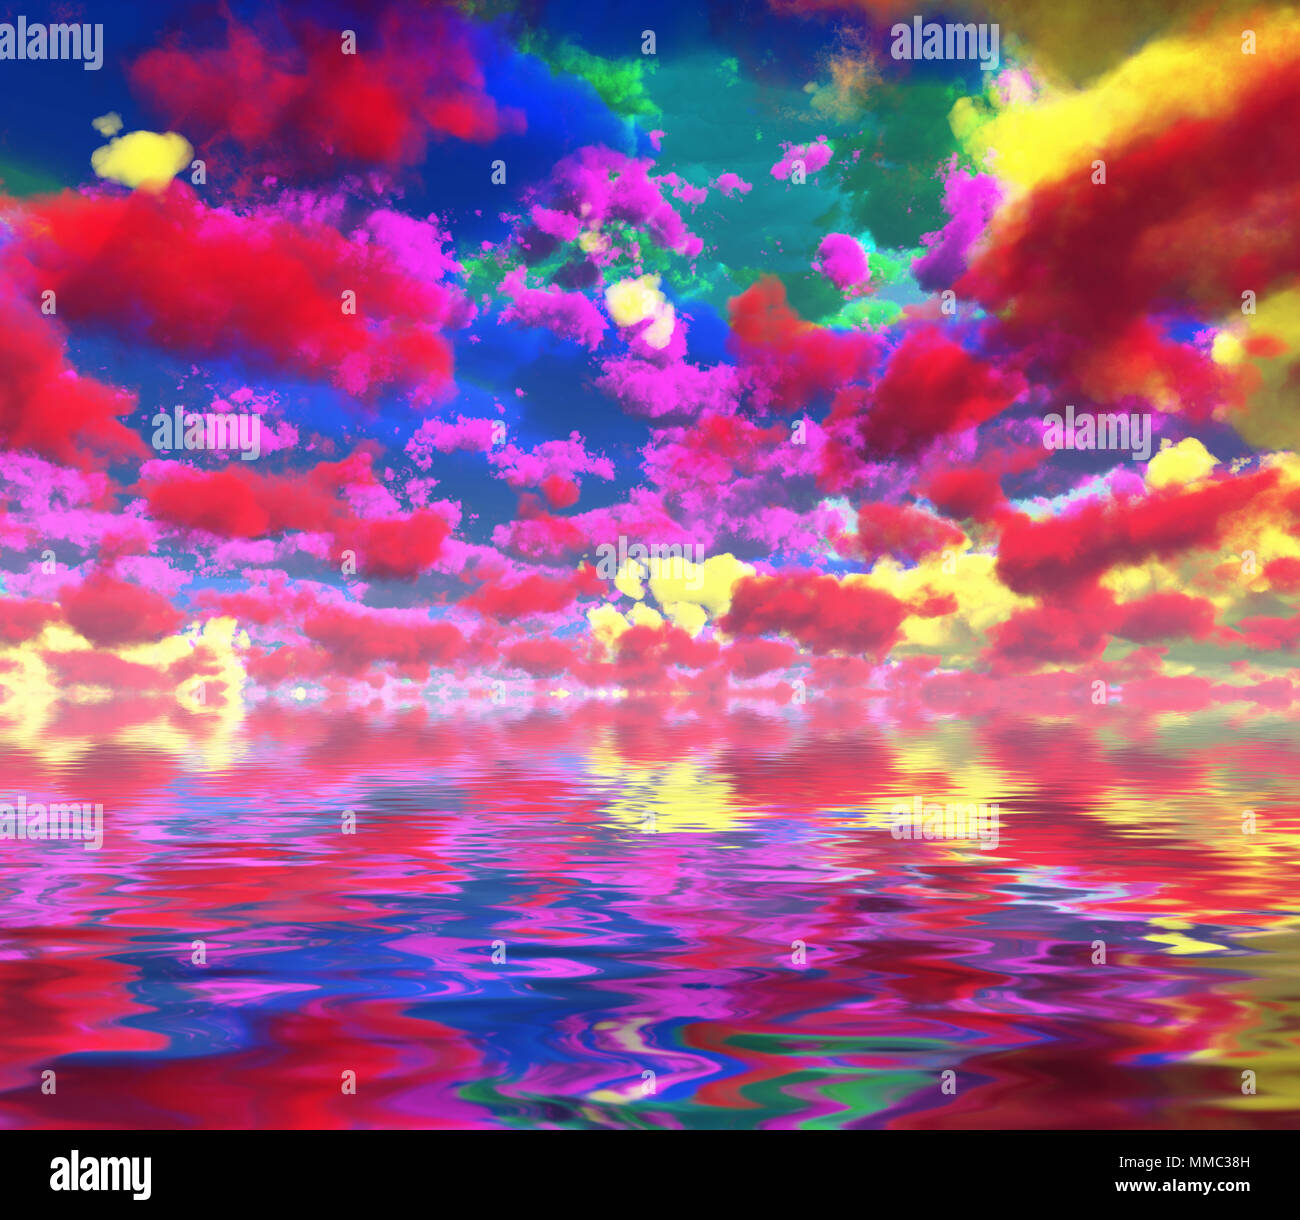 Surreal art numérique nuages colorés reflètent dans l'eau. Banque D'Images